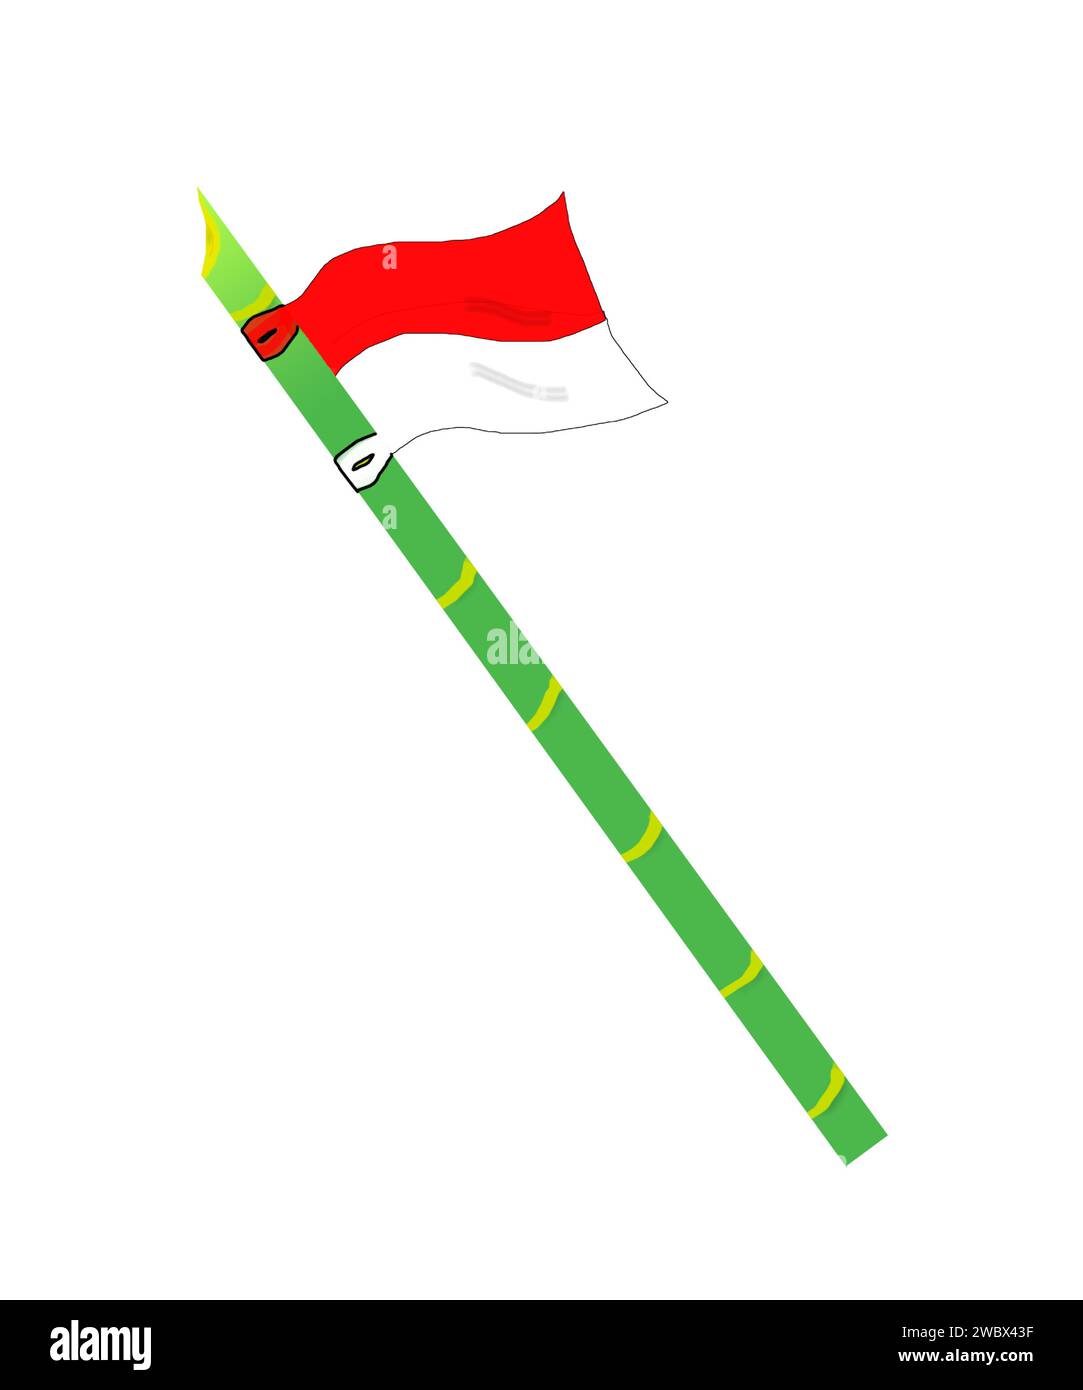 Un esempio di una lancia di bambù e di una bandiera indonesiana legata alla fine, è diventato un simbolo della resistenza del popolo indonesiano. Illustrazione Vettoriale